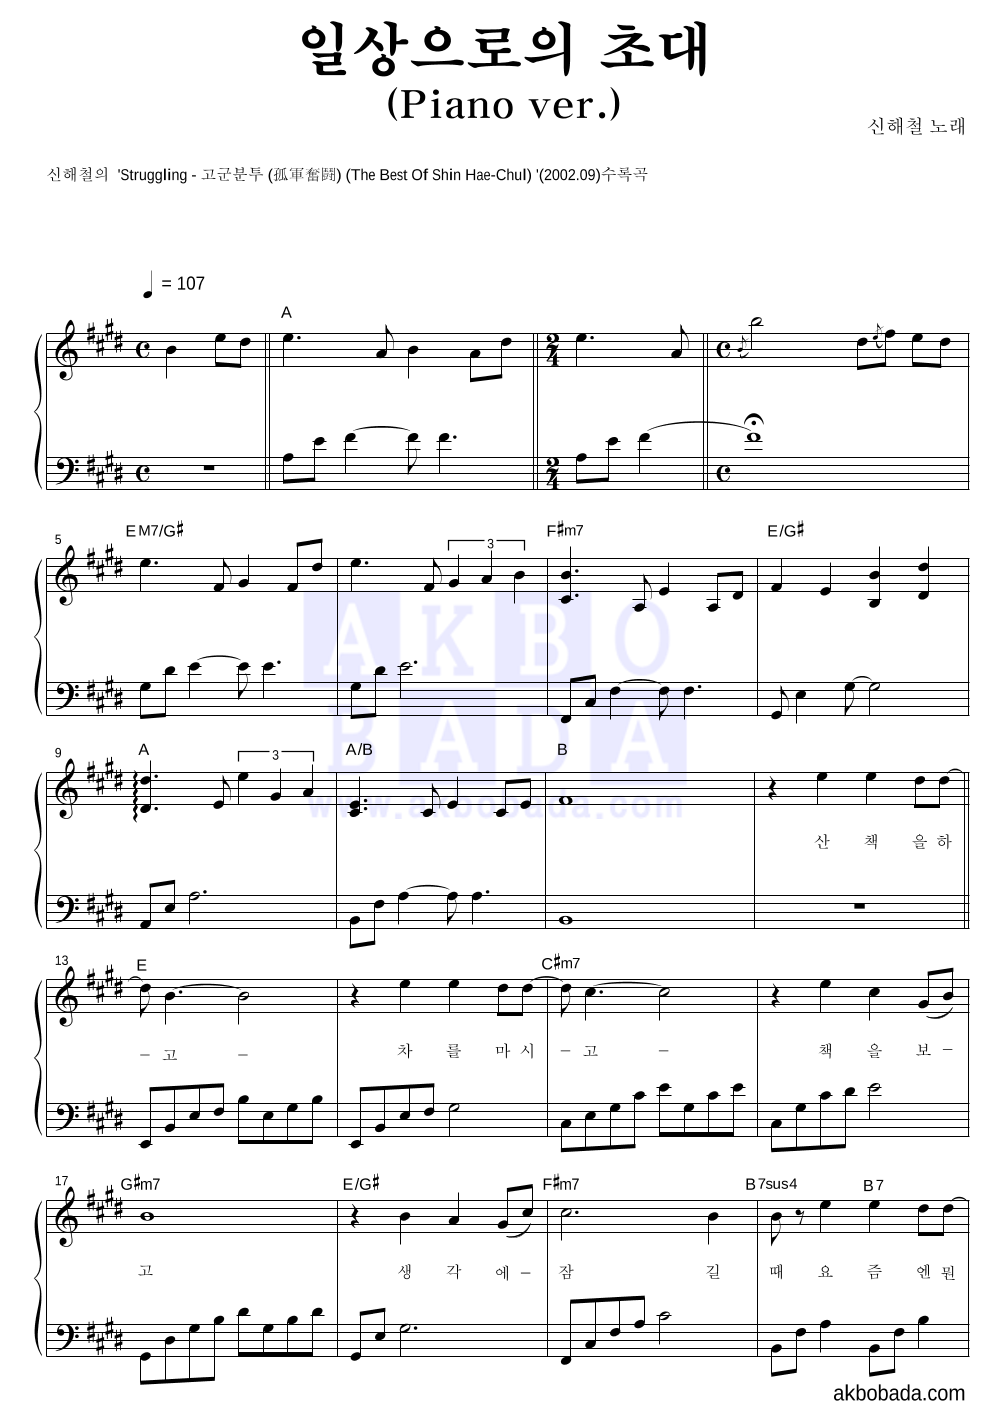 신해철 - 일상으로의 초대(Piano ver.) 피아노 2단 악보 